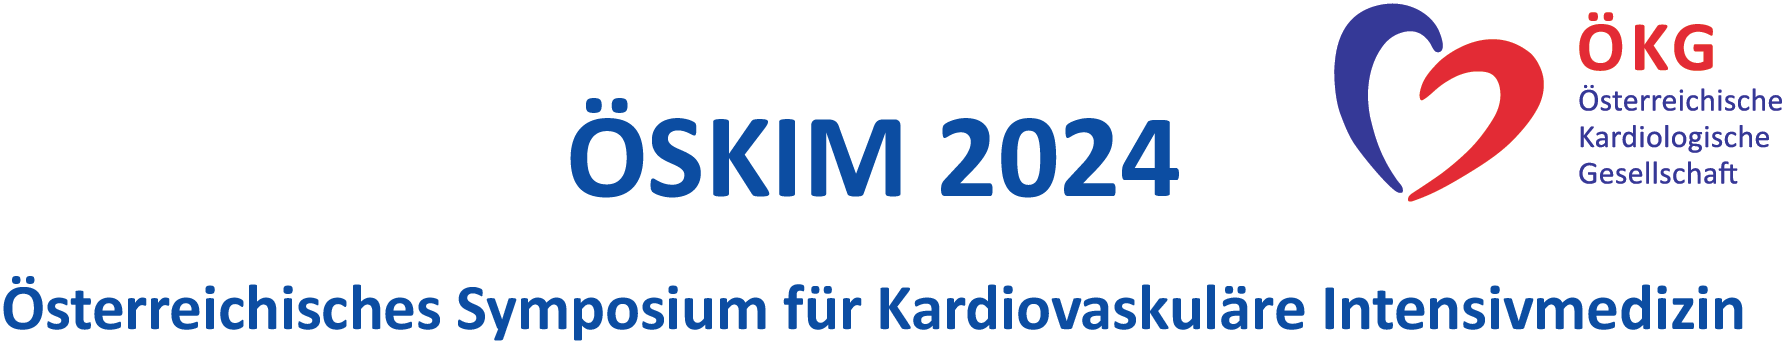 Österreichisches Symposium für Kardiovaskuläre Intensivmedizin 2024